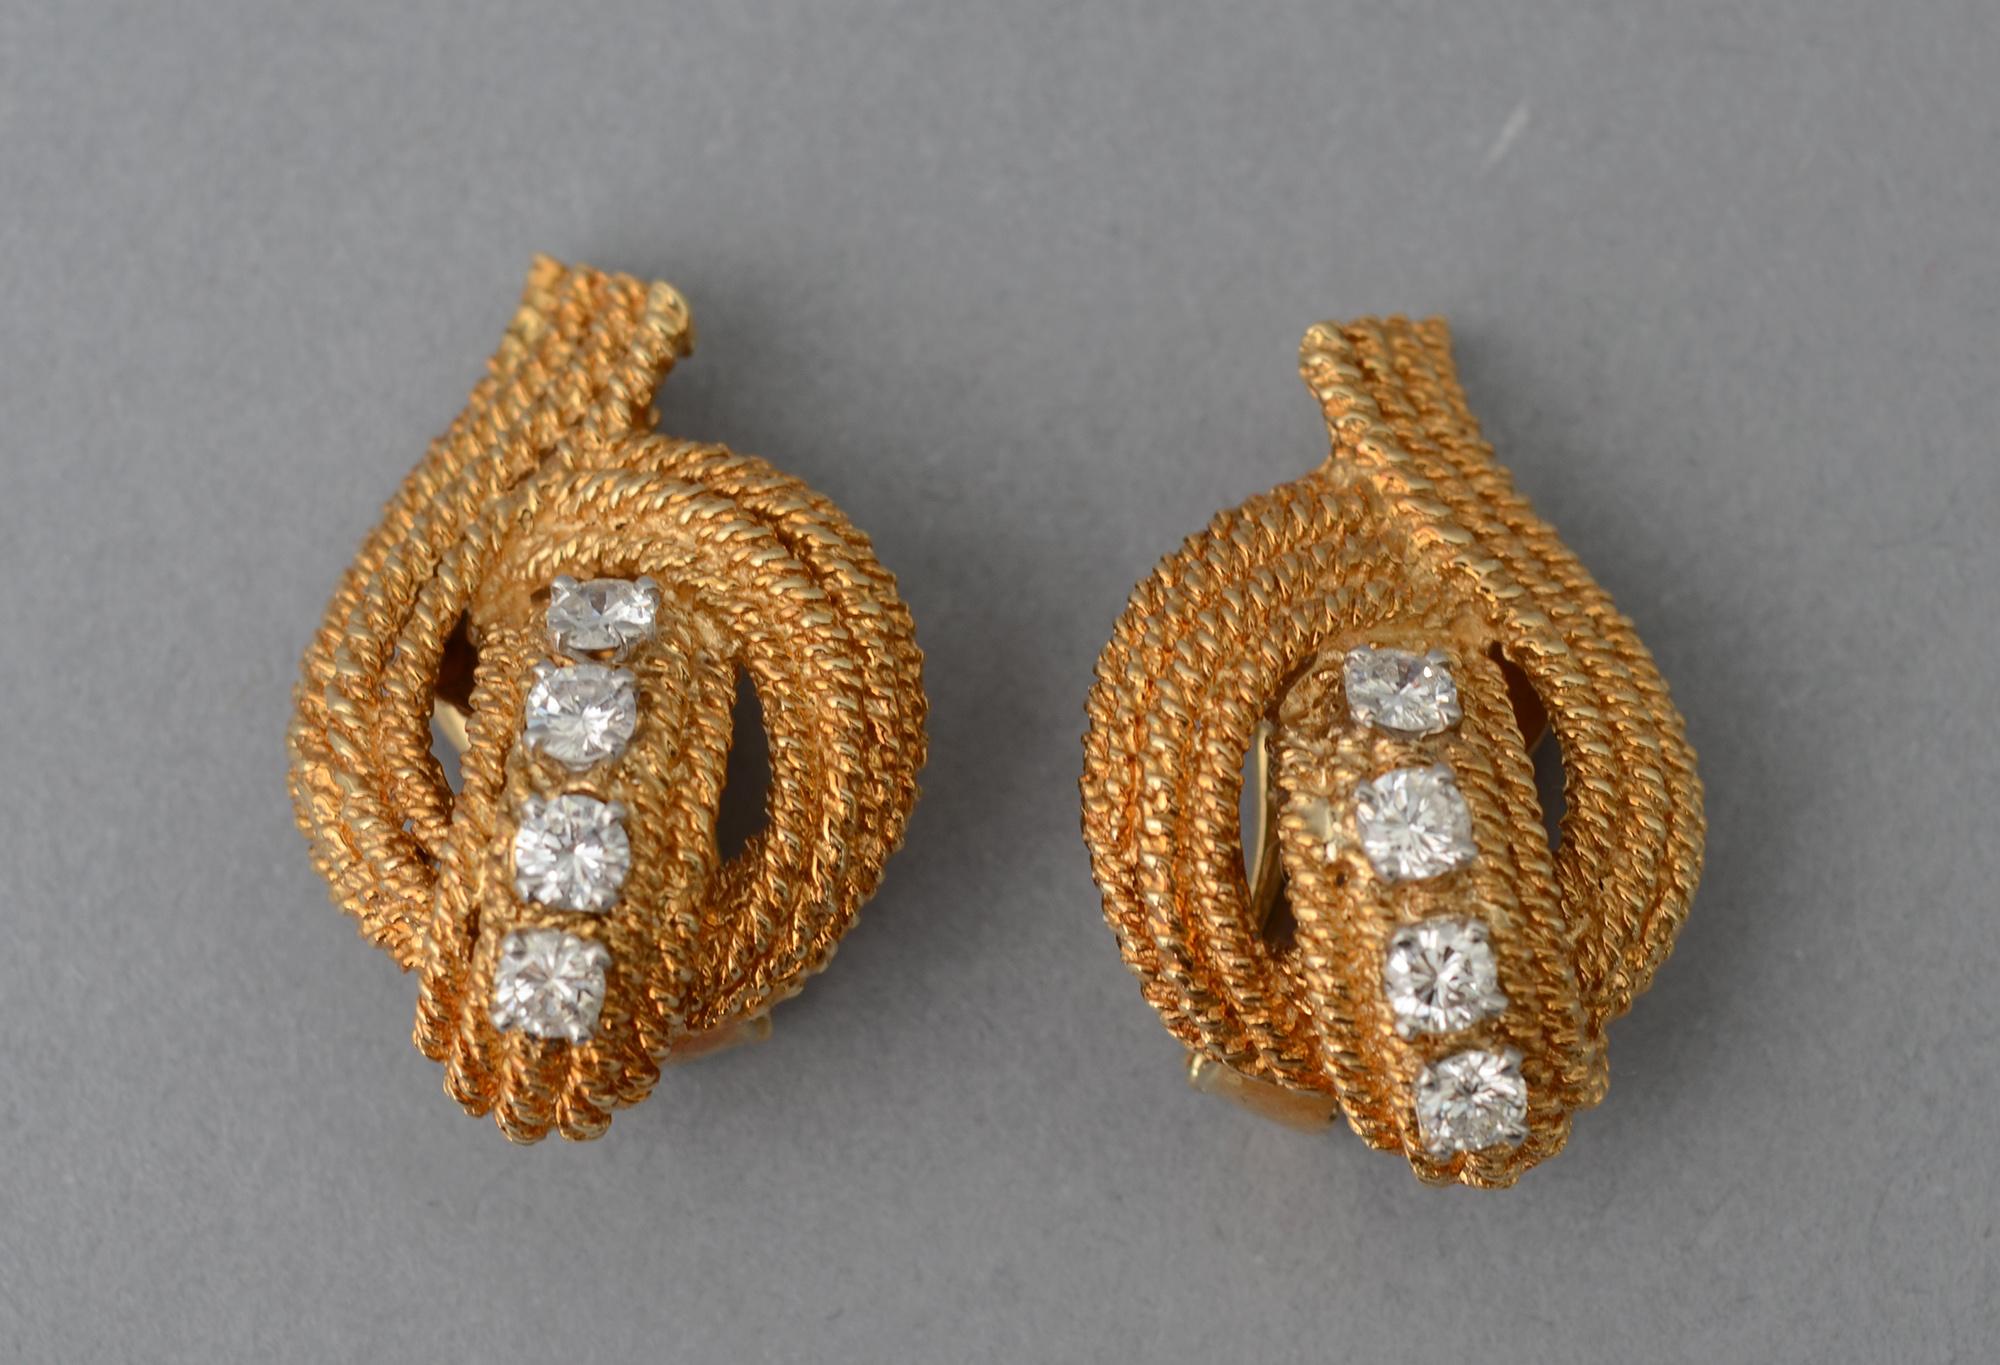 Elegante Ohrclips aus Gold und Diamanten von David Webb. Jeder Ohrring hat 4 Diamanten mit einem Gesamtgewicht von etwa 1,25 Karat. Sie sind umgeben von drei Reihen aus gedrehtem Gold in einem anmutigen, erhebenden  entwurf.
Clip-Rückwände können in